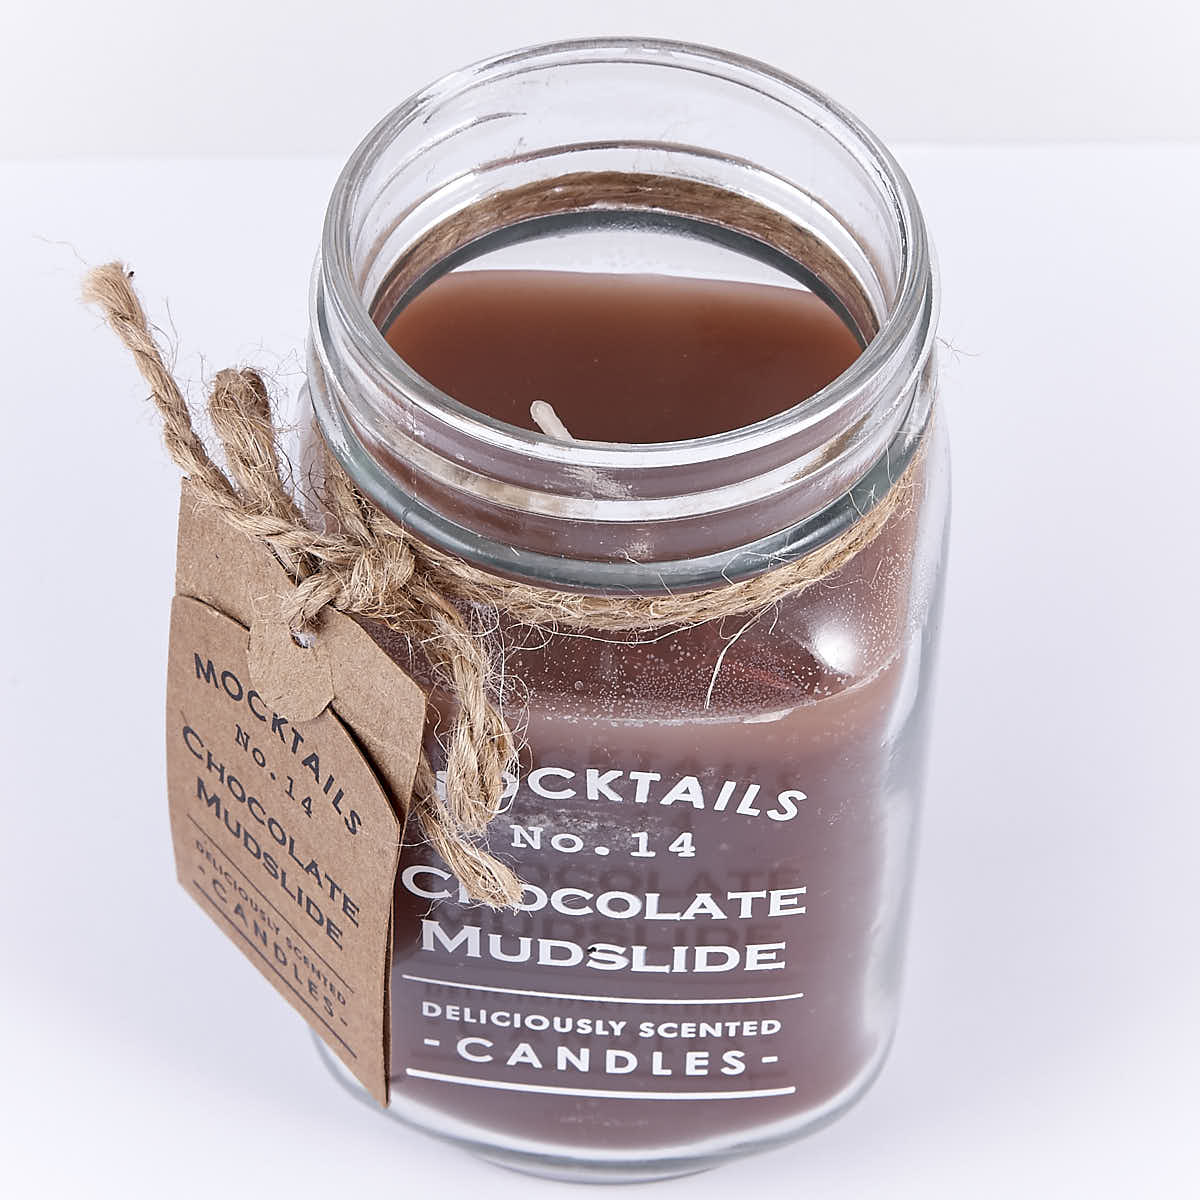 Mocktails Scented Candle - Chocolate Mudslide (Set of 2)